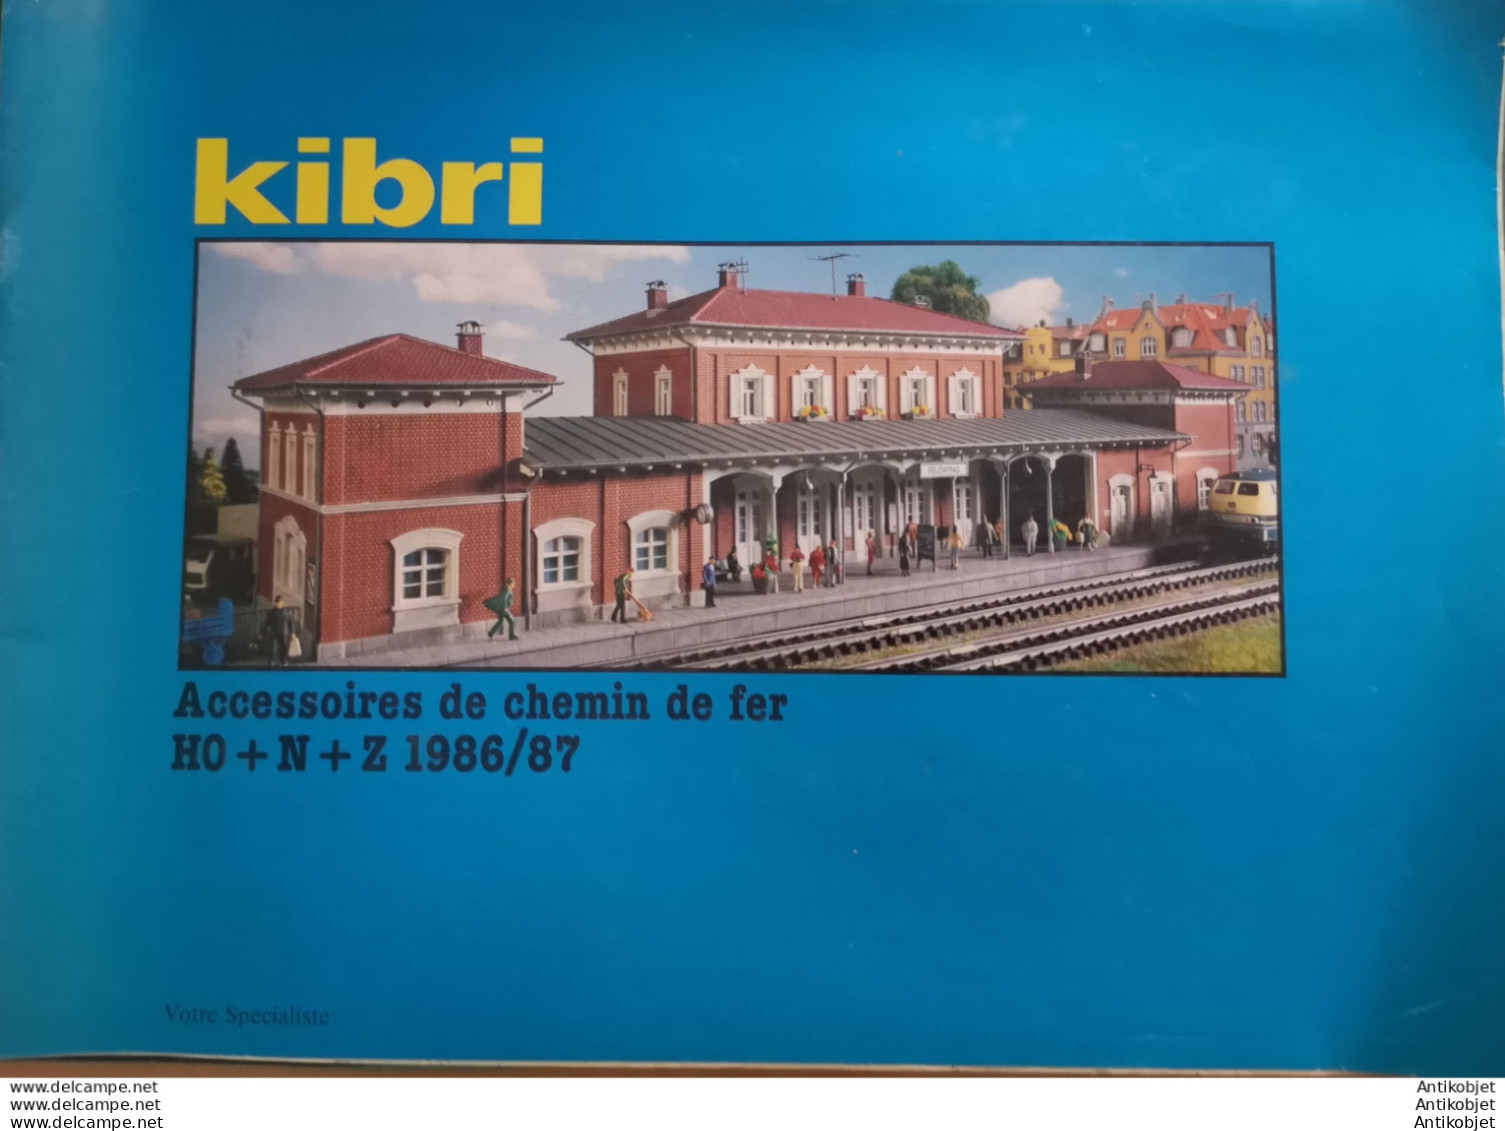 KIBRI (Gare,diorama,modélisme,train,véhicule) 1986-87 - 1950 - ...